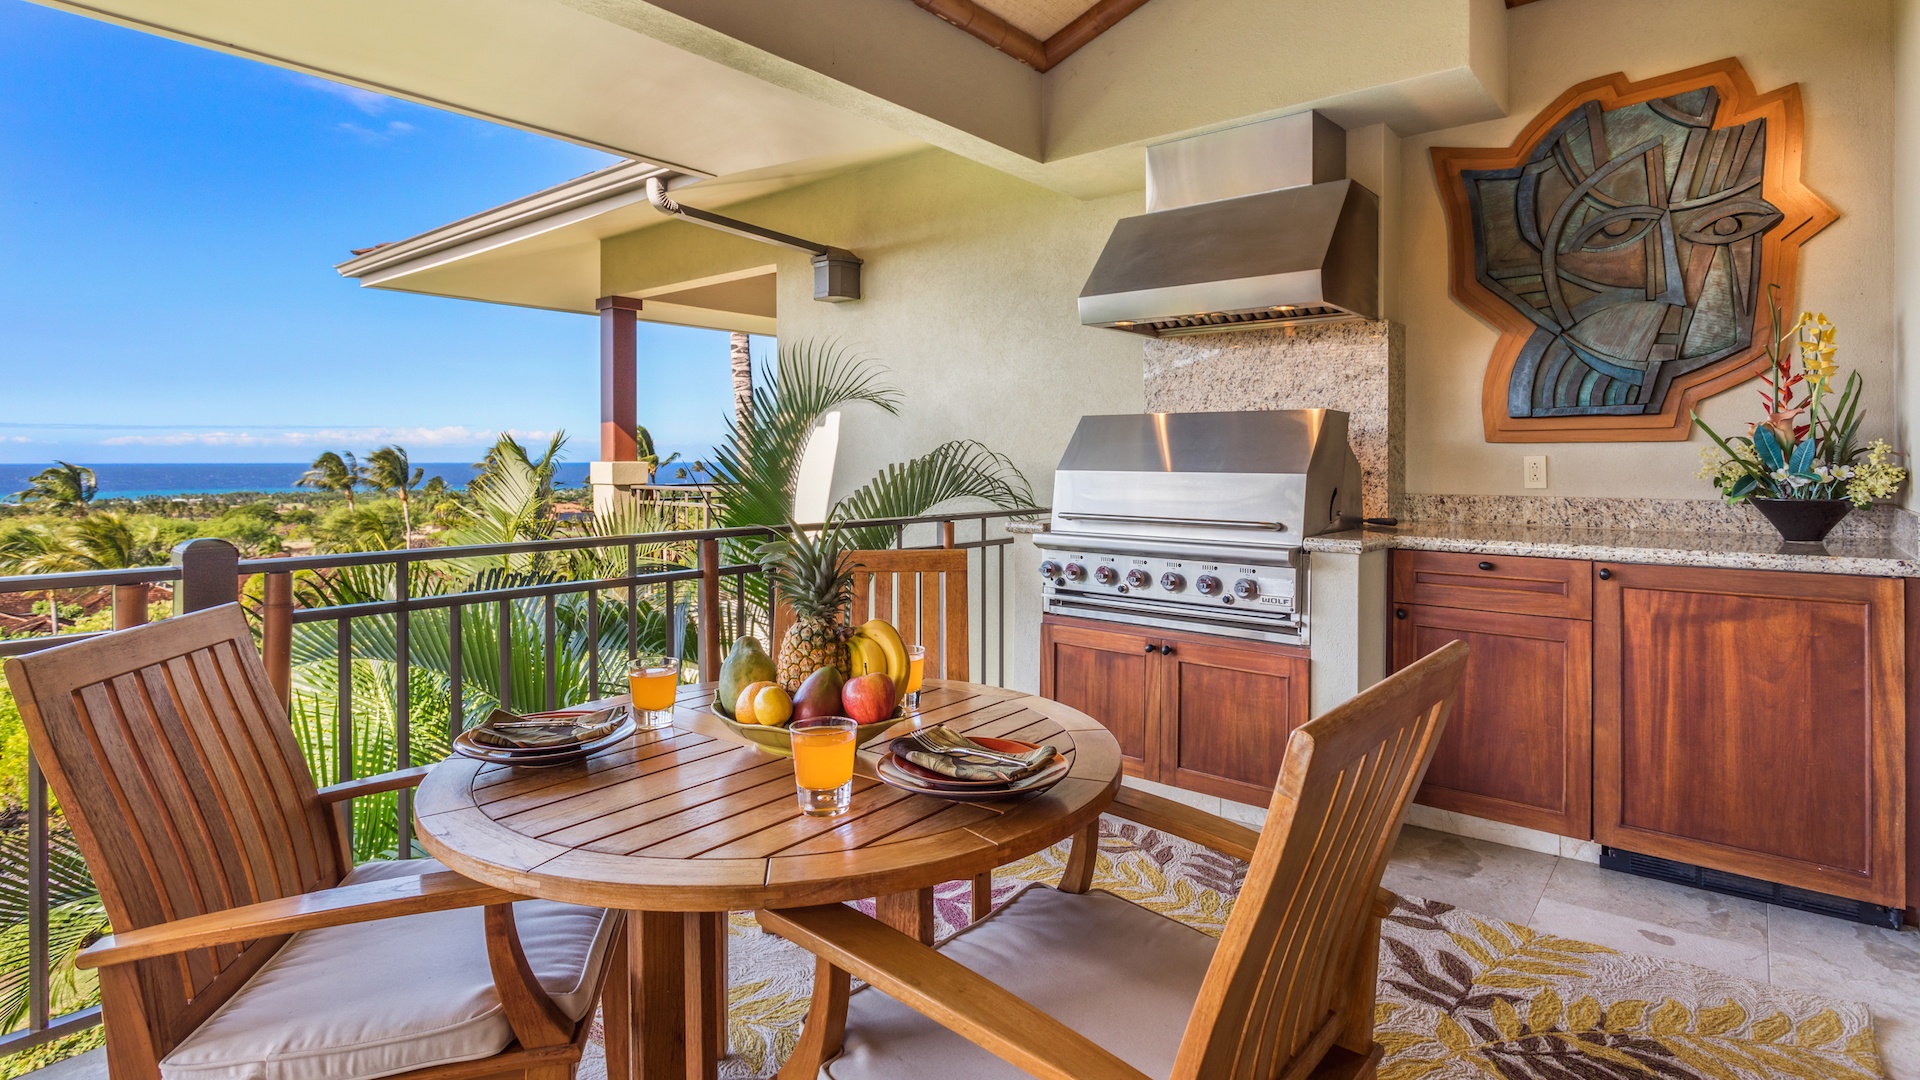 Kailua Kona Vacation Rentals, 2BD Hainoa Villa (2907B) at Four Seasons Resort at Hualalai - Inset of Lanai Dining & BBQ.